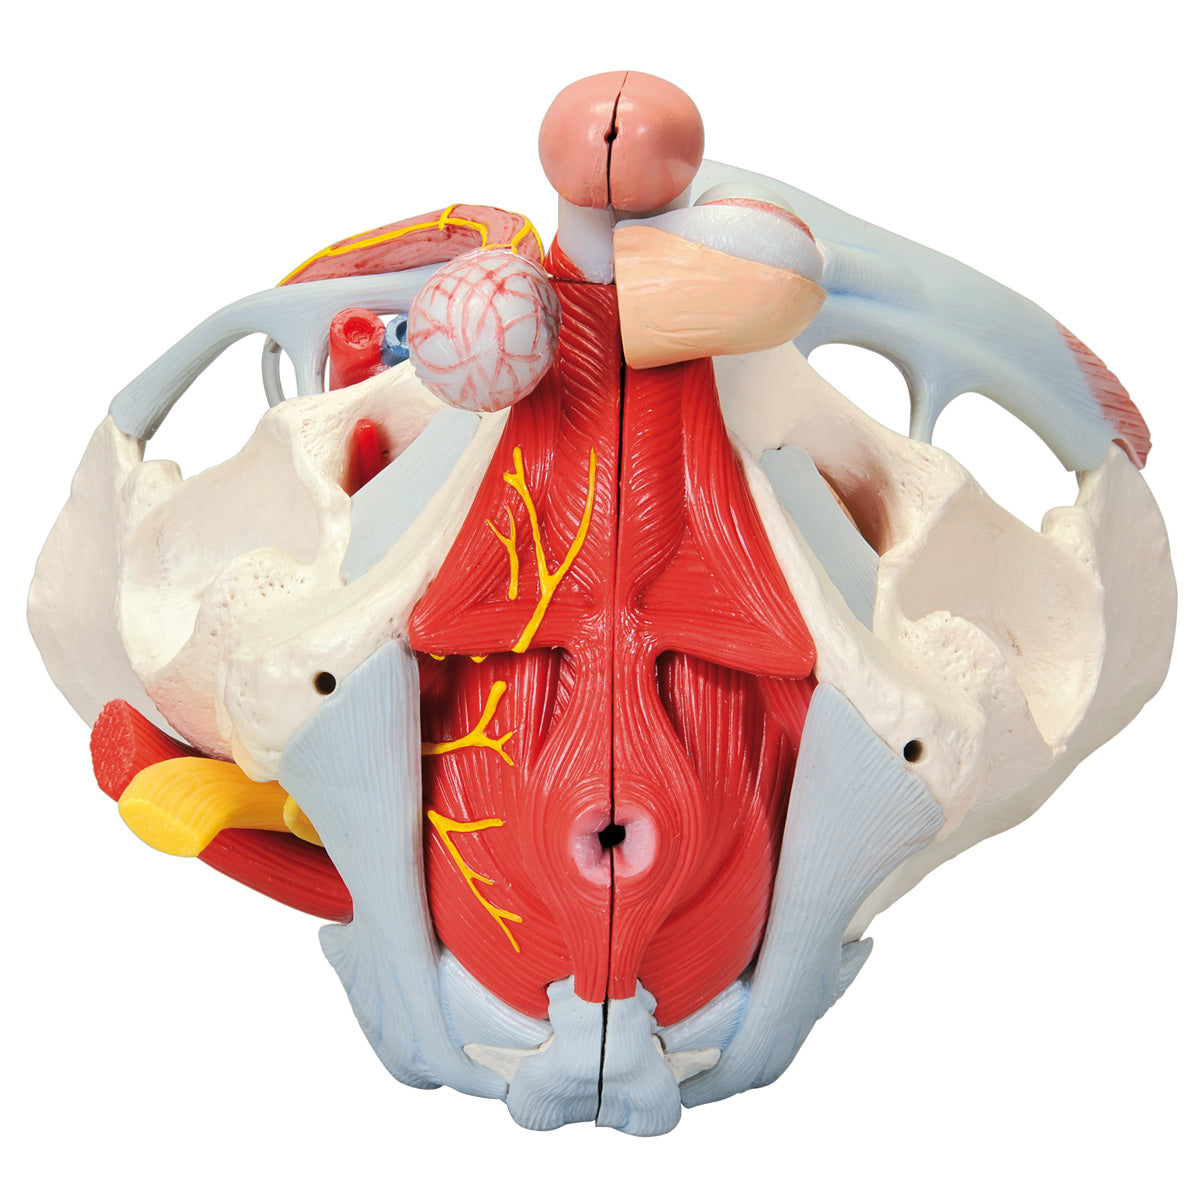 Bækkenmodel der viser bækken-bunden, kønsorganer, ledbånd, nerver og blodkar hos manden